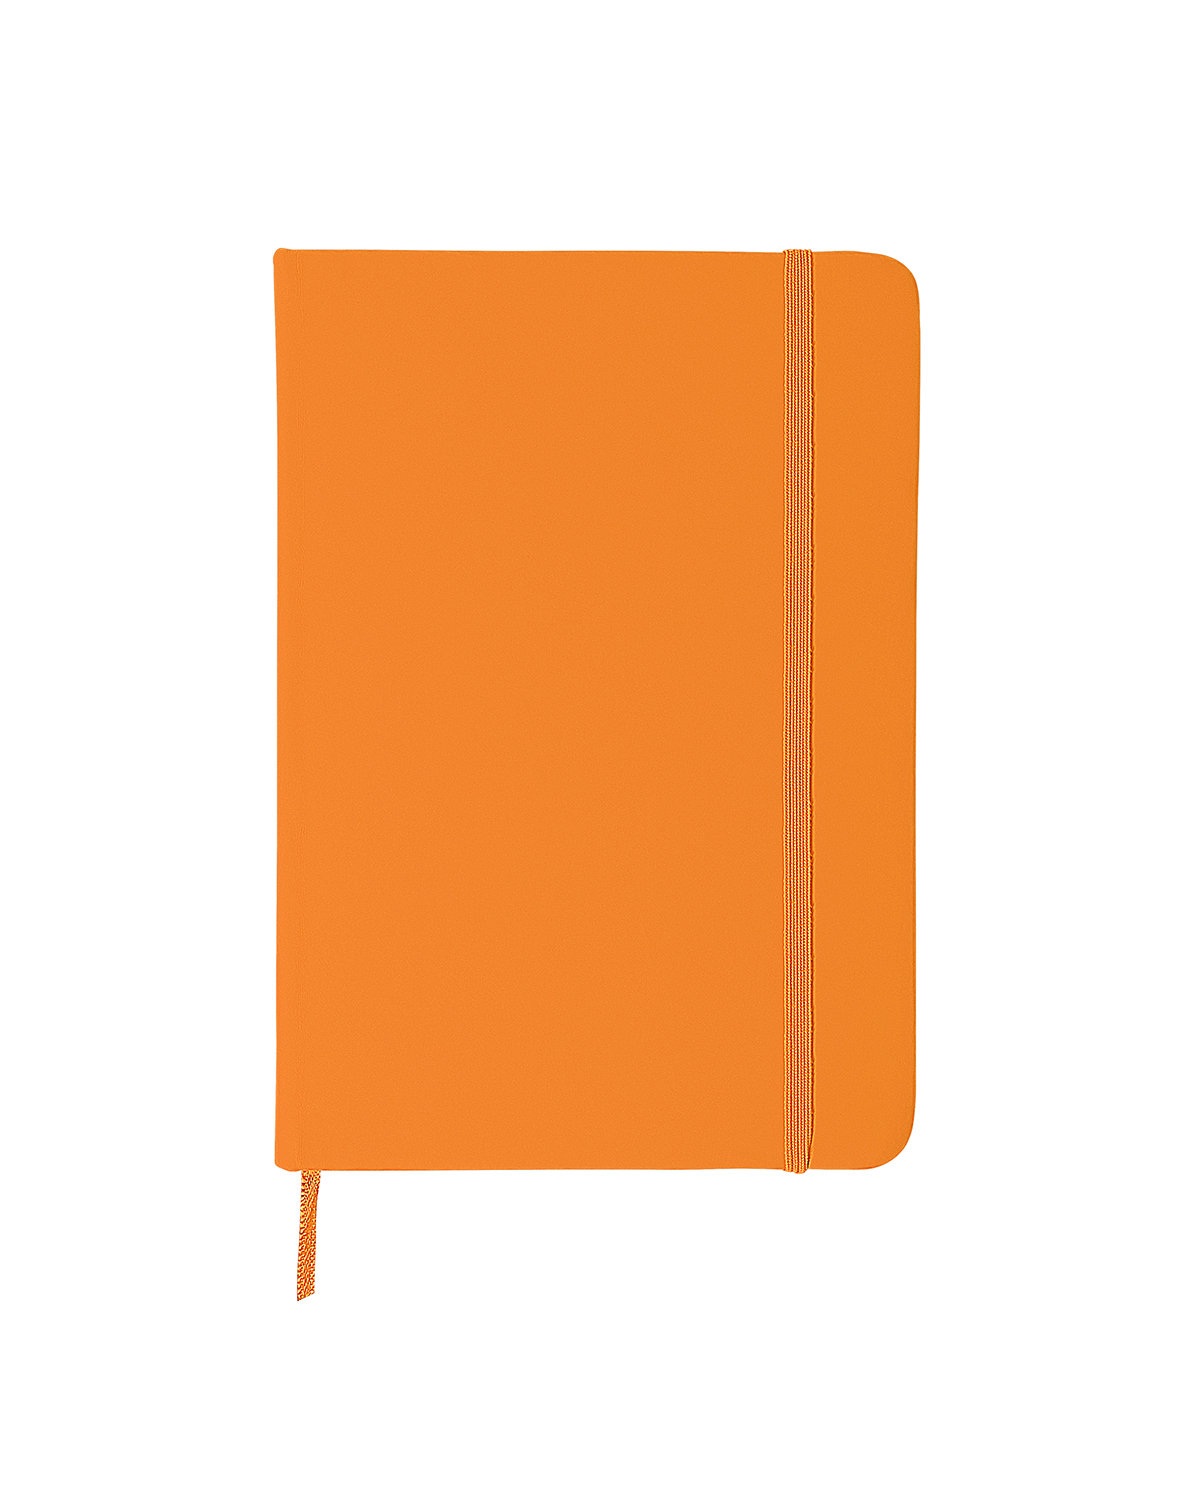 Prime Line Comfort Touch Bound Journal 5" X 7" orange 